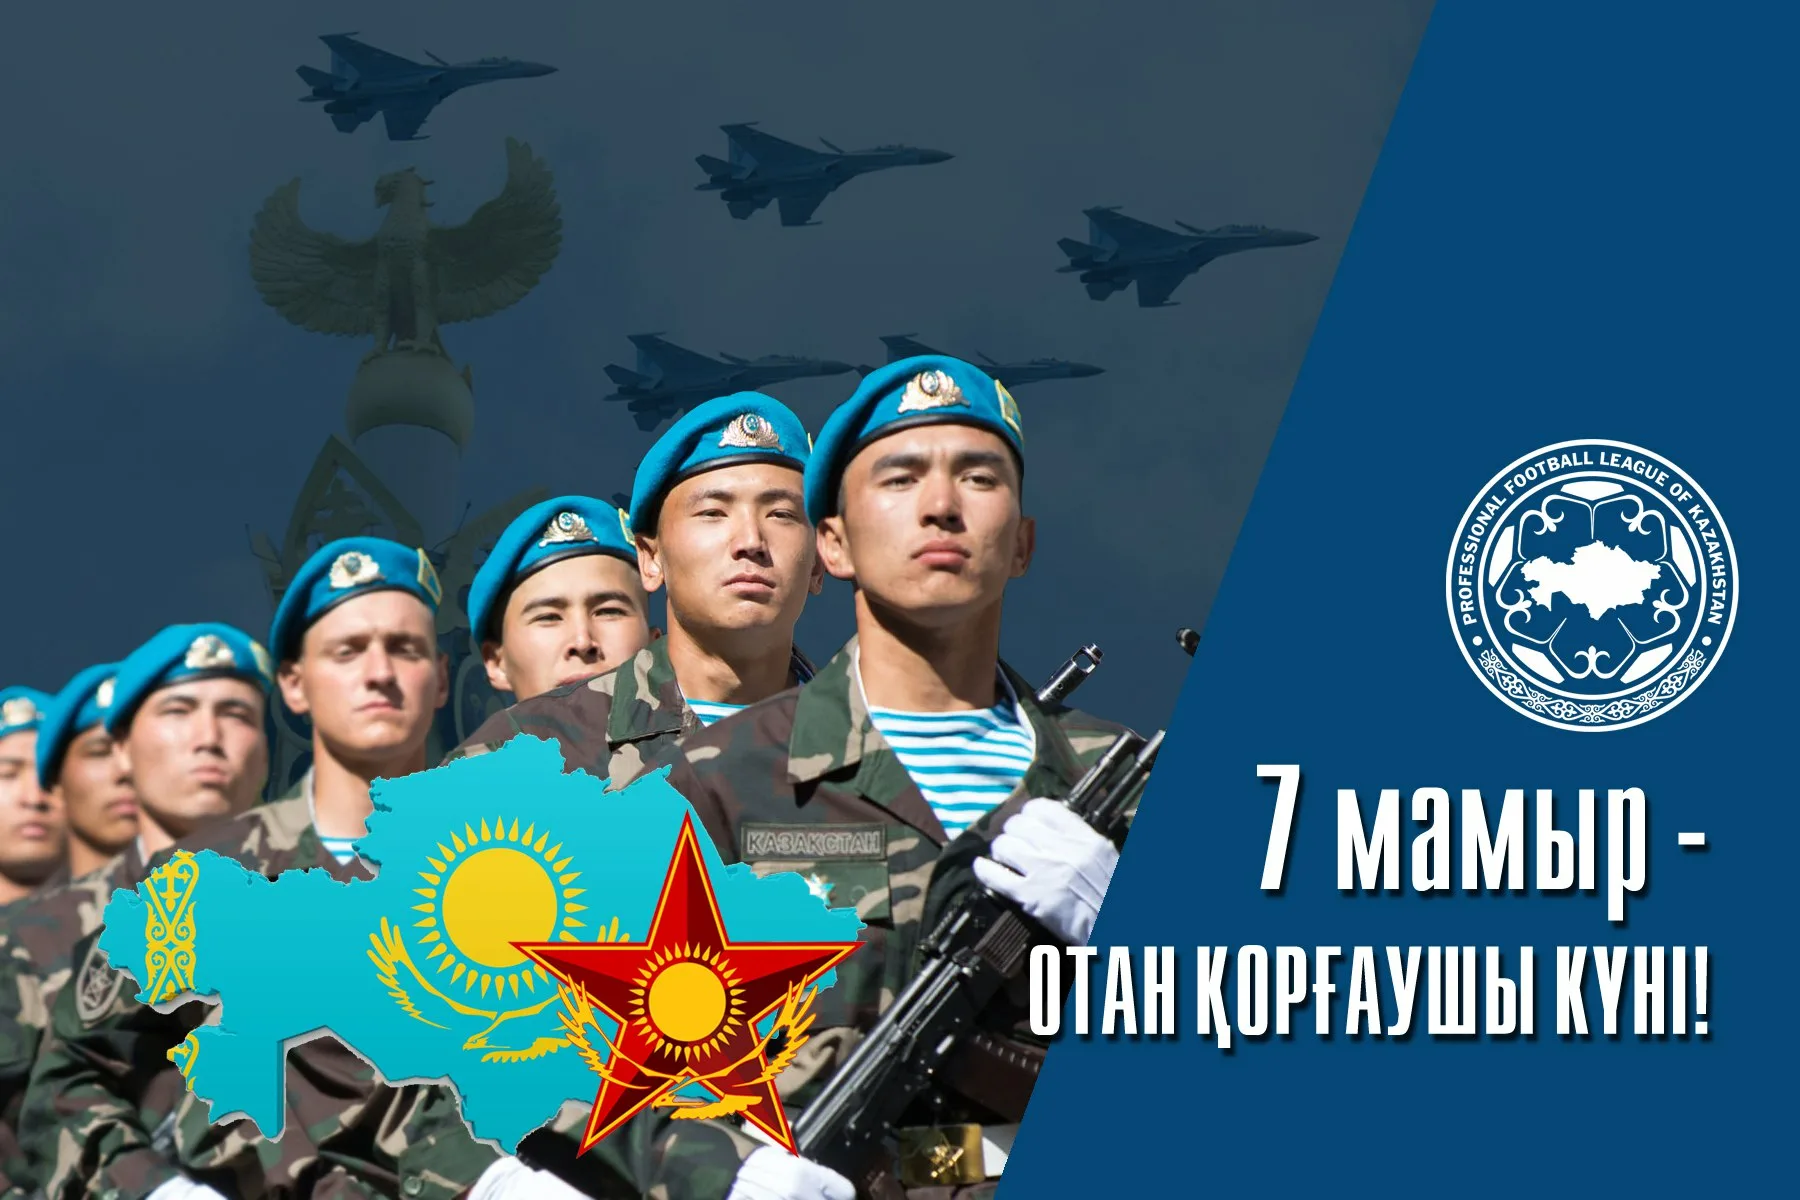 Фото Поздравления любимому с Днем защитника Отечества в Казахстане (7 Мая) #6